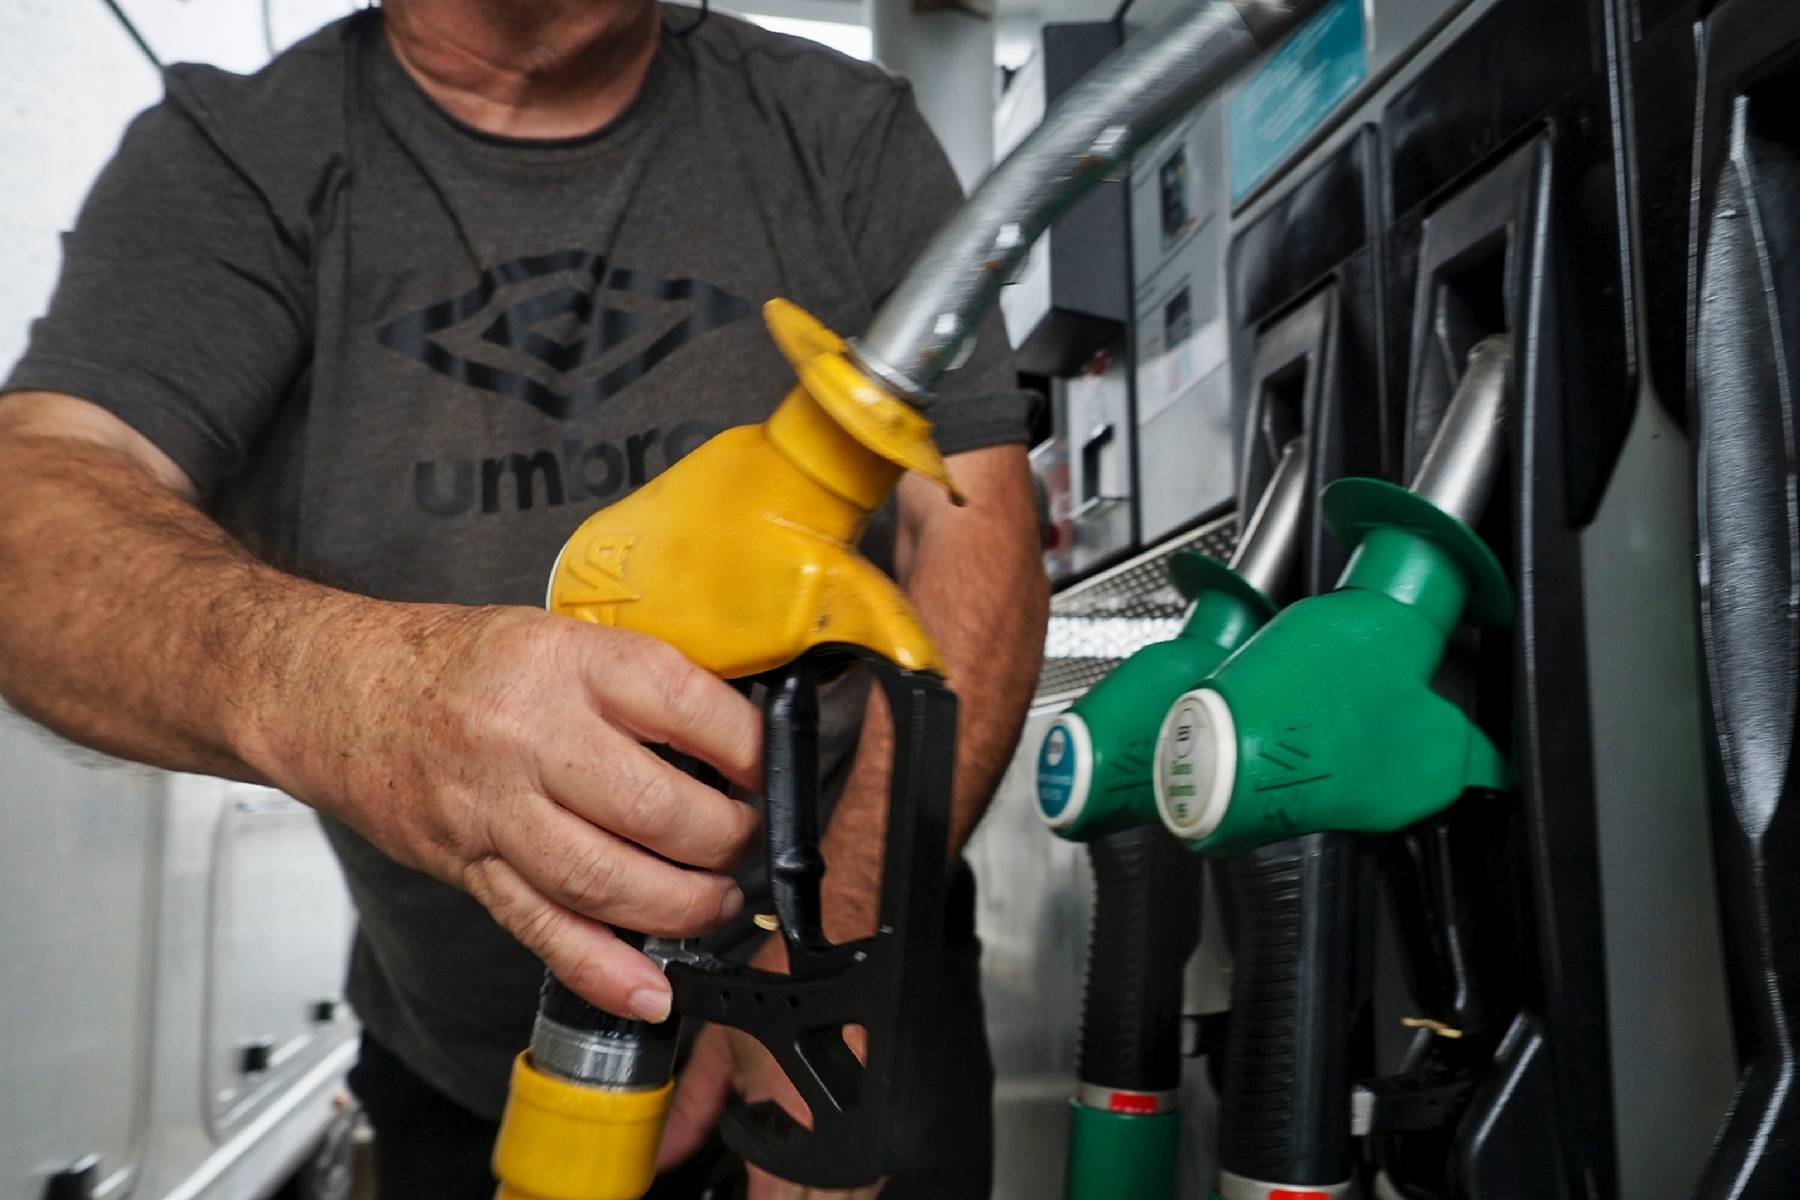 L'indemnité carburant prolongée jusqu'à fin mars par le gouvernement